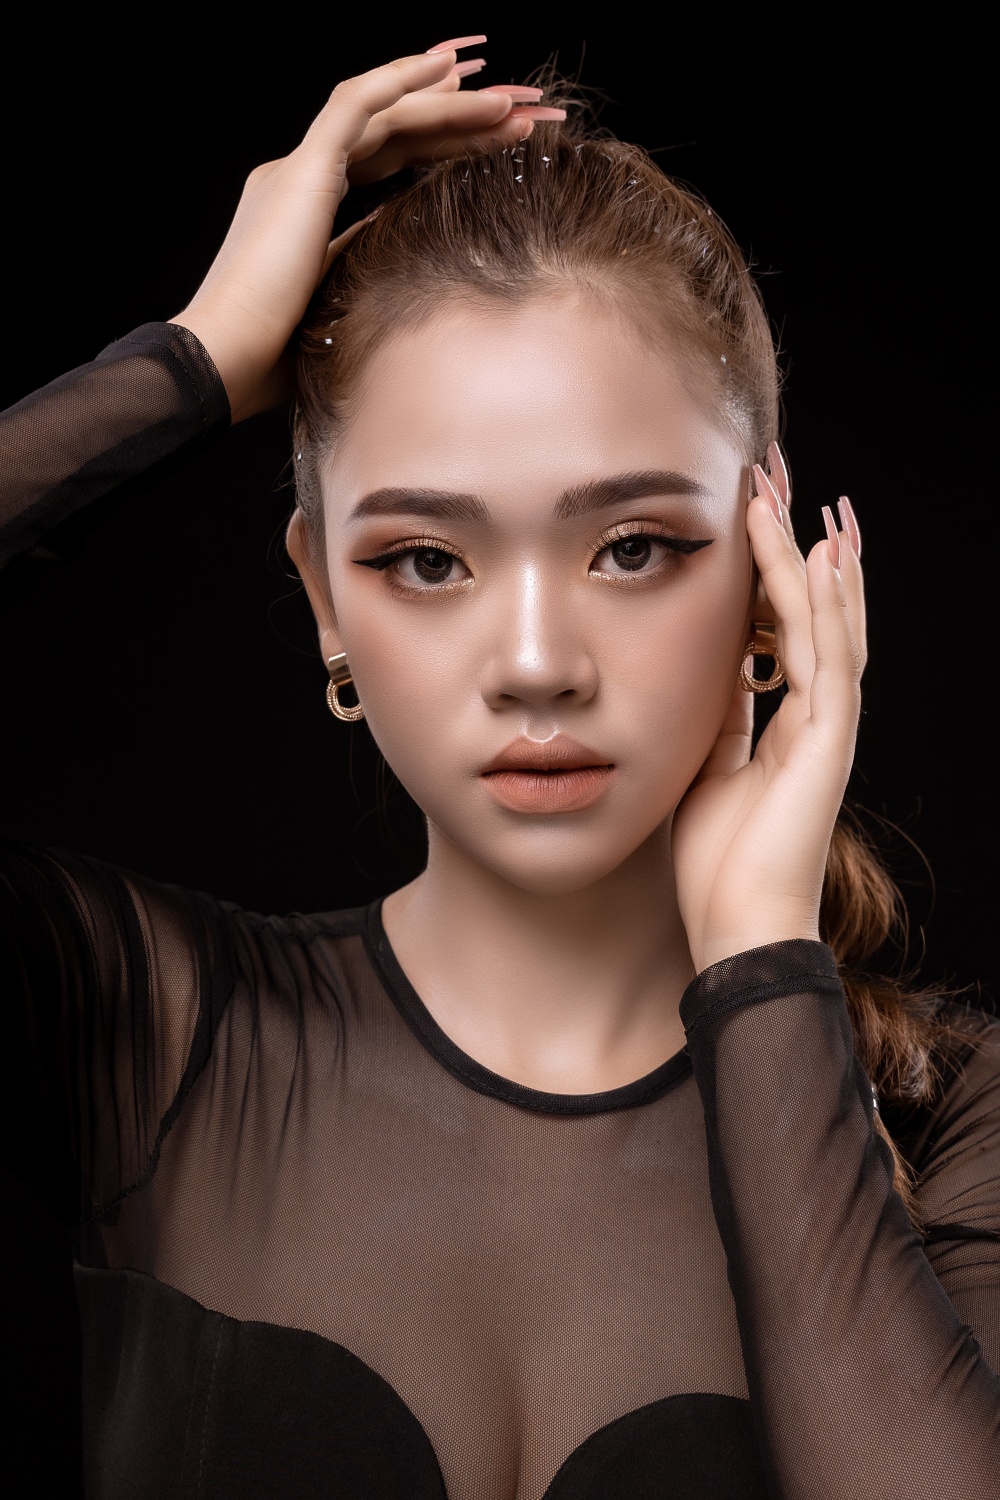 Nữ sinh 19 tuổi Dược Thanh đang dẫn đầu bình chọn "Hoa hậu Hoàn vũ Việt Nam" 2021